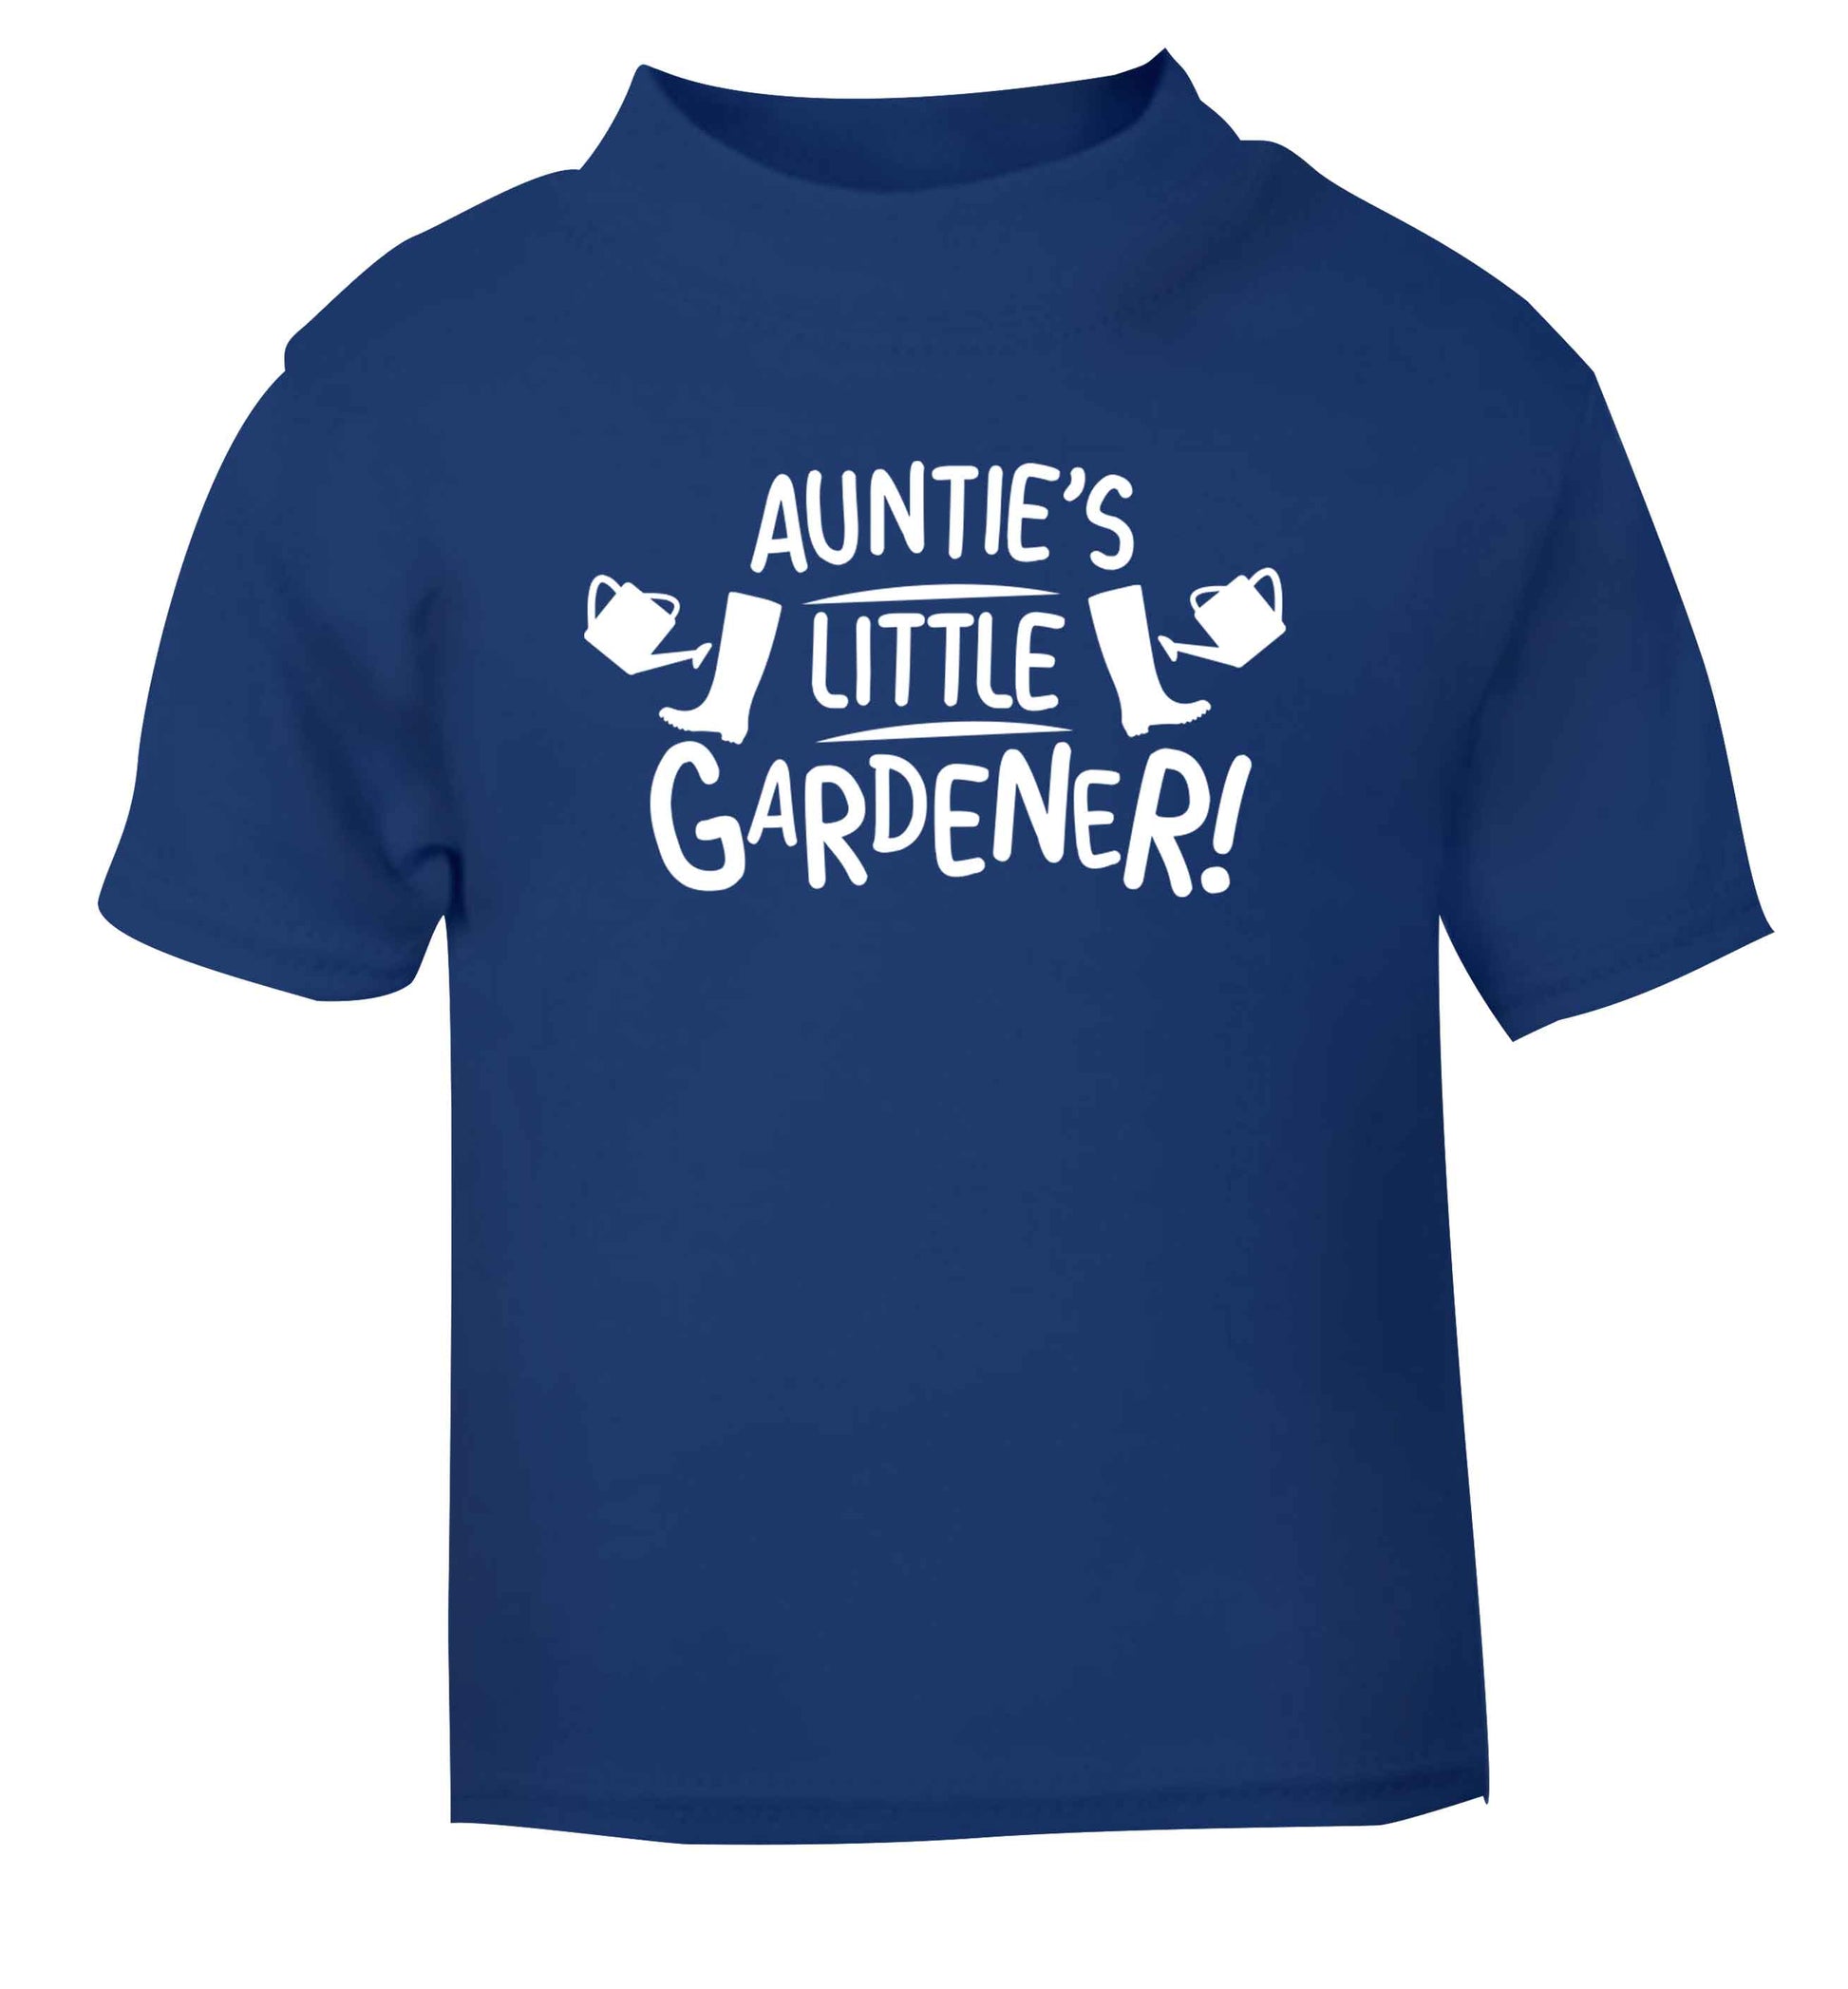 Auntie's little gardener blue Baby Toddler Tshirt 2 Years